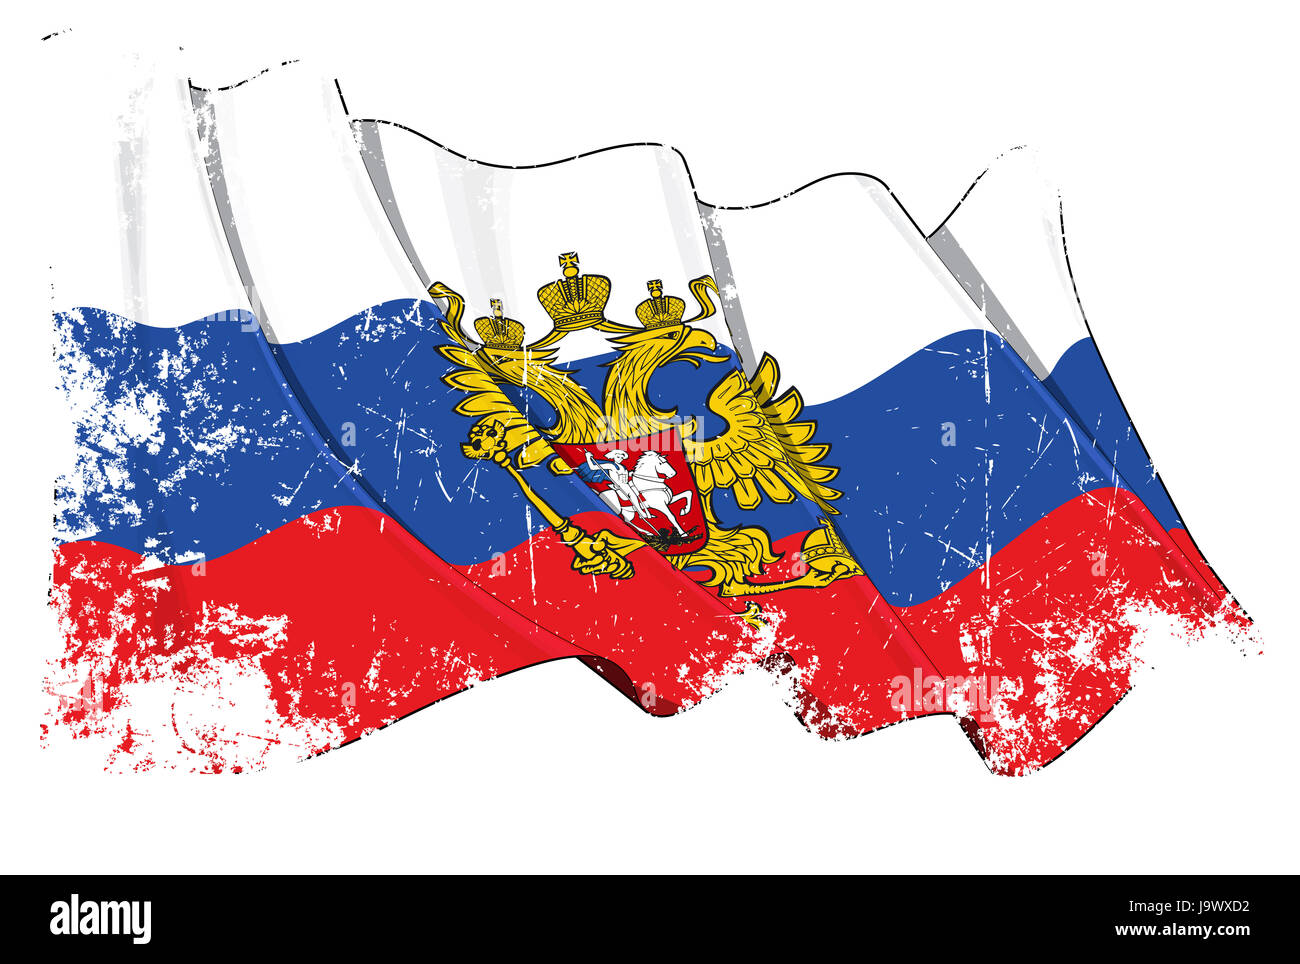  AZ FLAG Russia with Eagle Flag 2' x 3' - Russian Coat